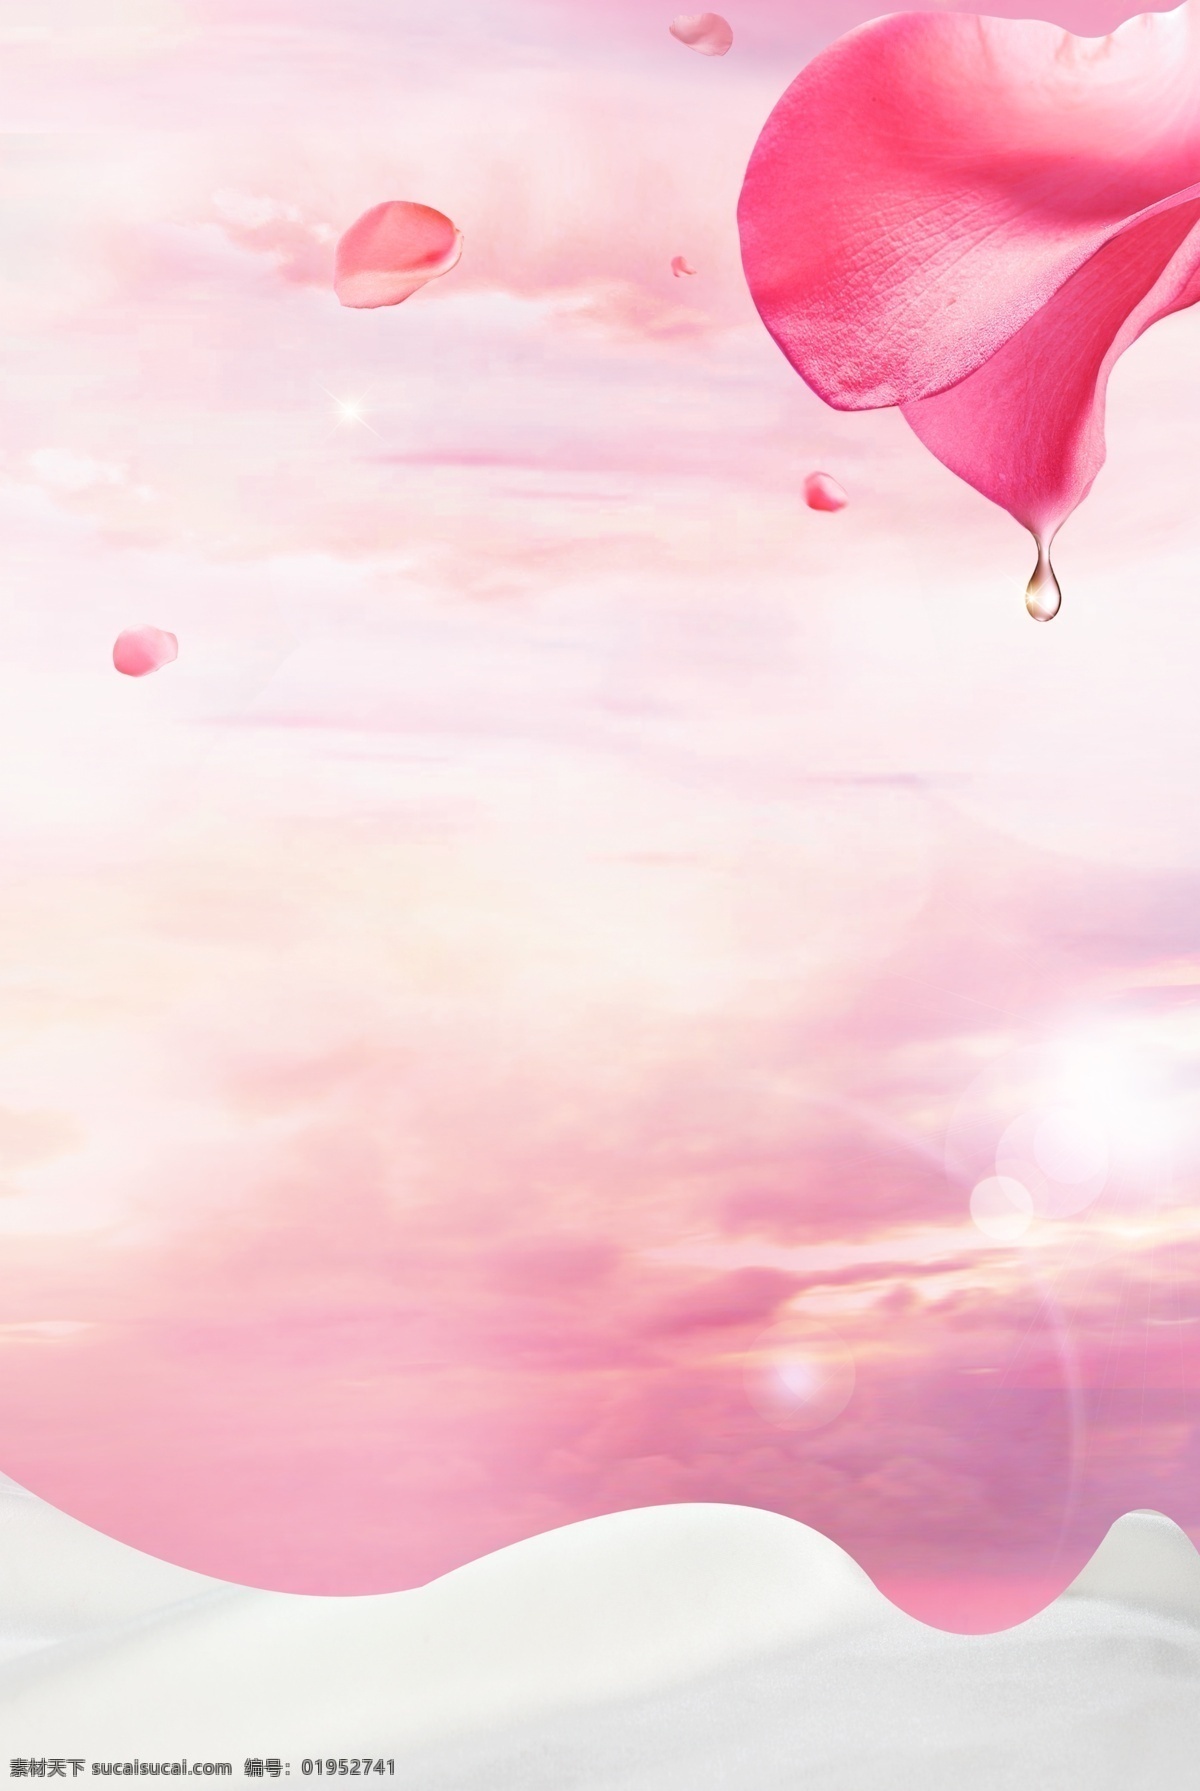 时尚 粉色 情人节 海报 背景 520 爱情 粉红色 海报背景 花瓣 花朵 简约 气球 心